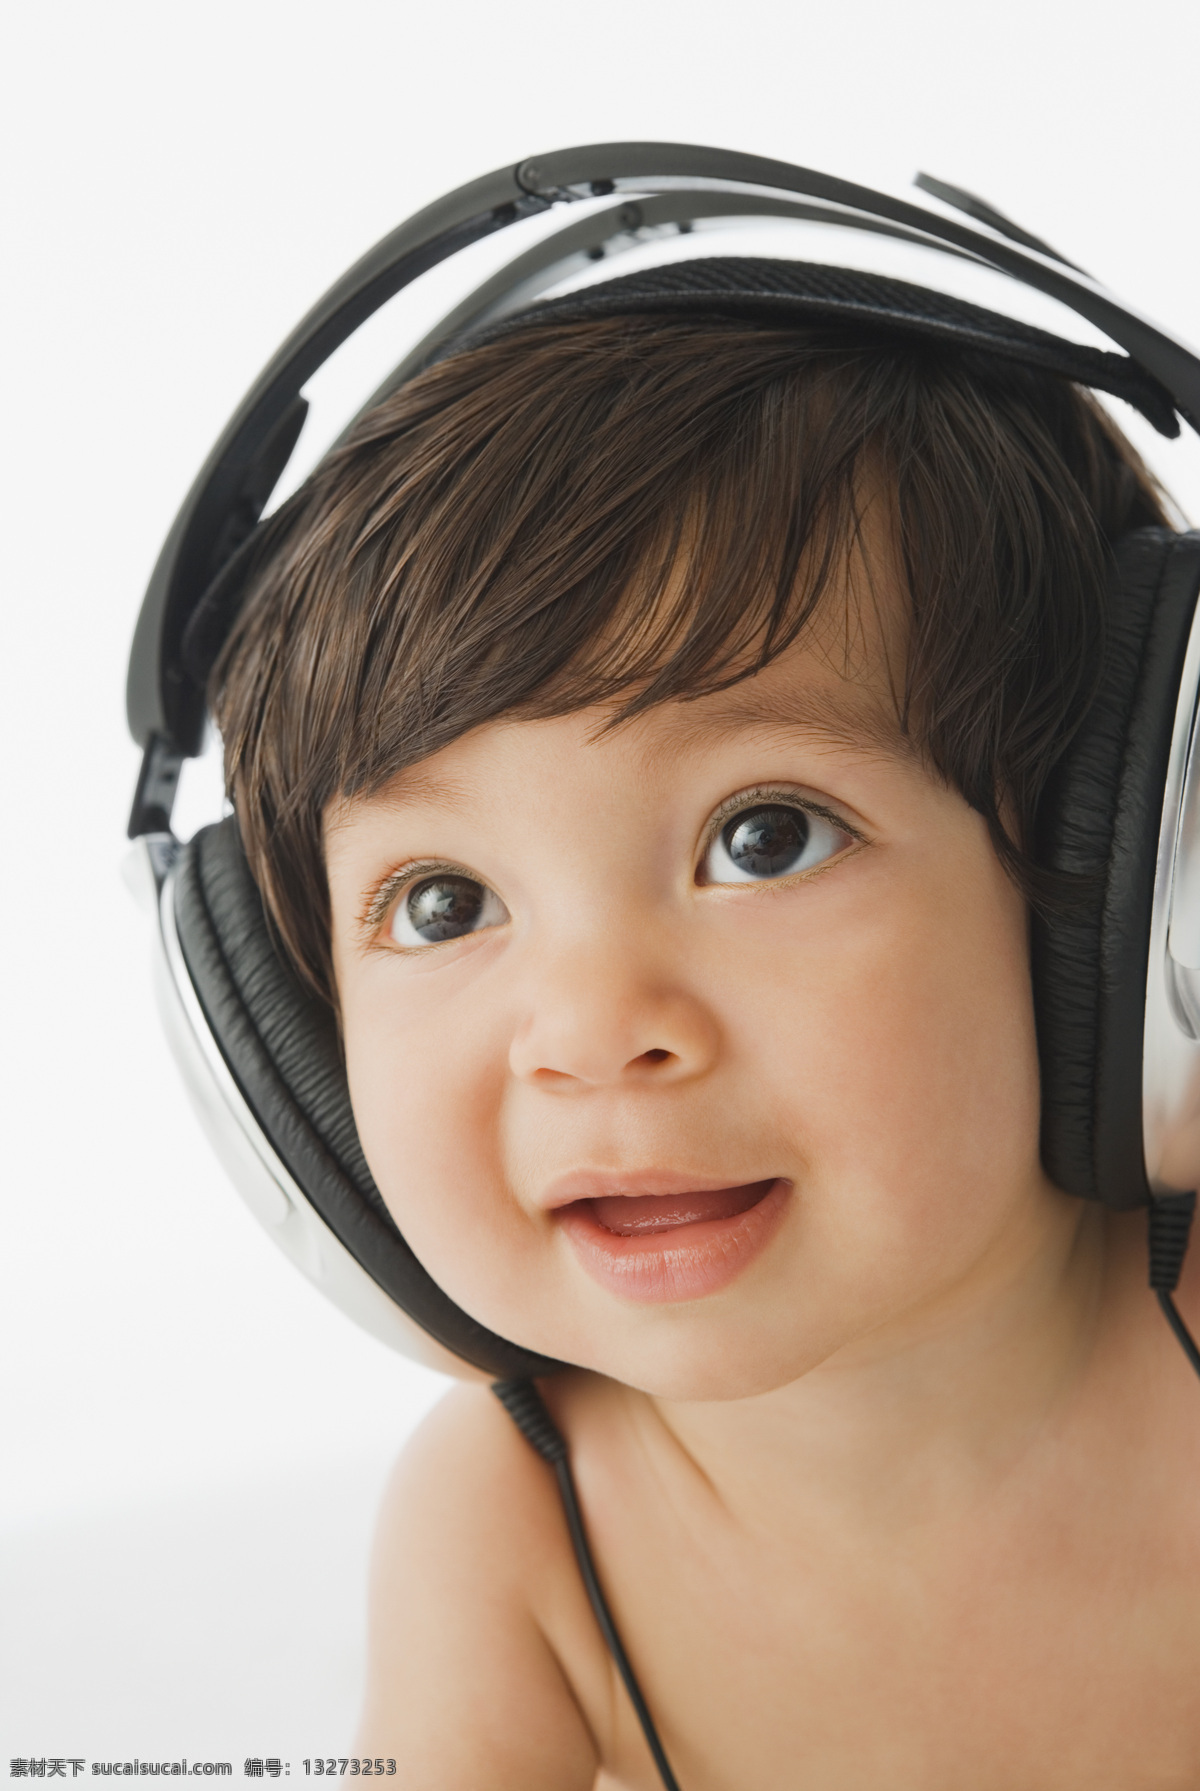 戴 耳机 宝宝 外国儿童 婴幼儿 可爱 小宝宝 婴儿 beby 健康宝宝 戴耳机 听音乐 幼教 宝宝图片 人物图片